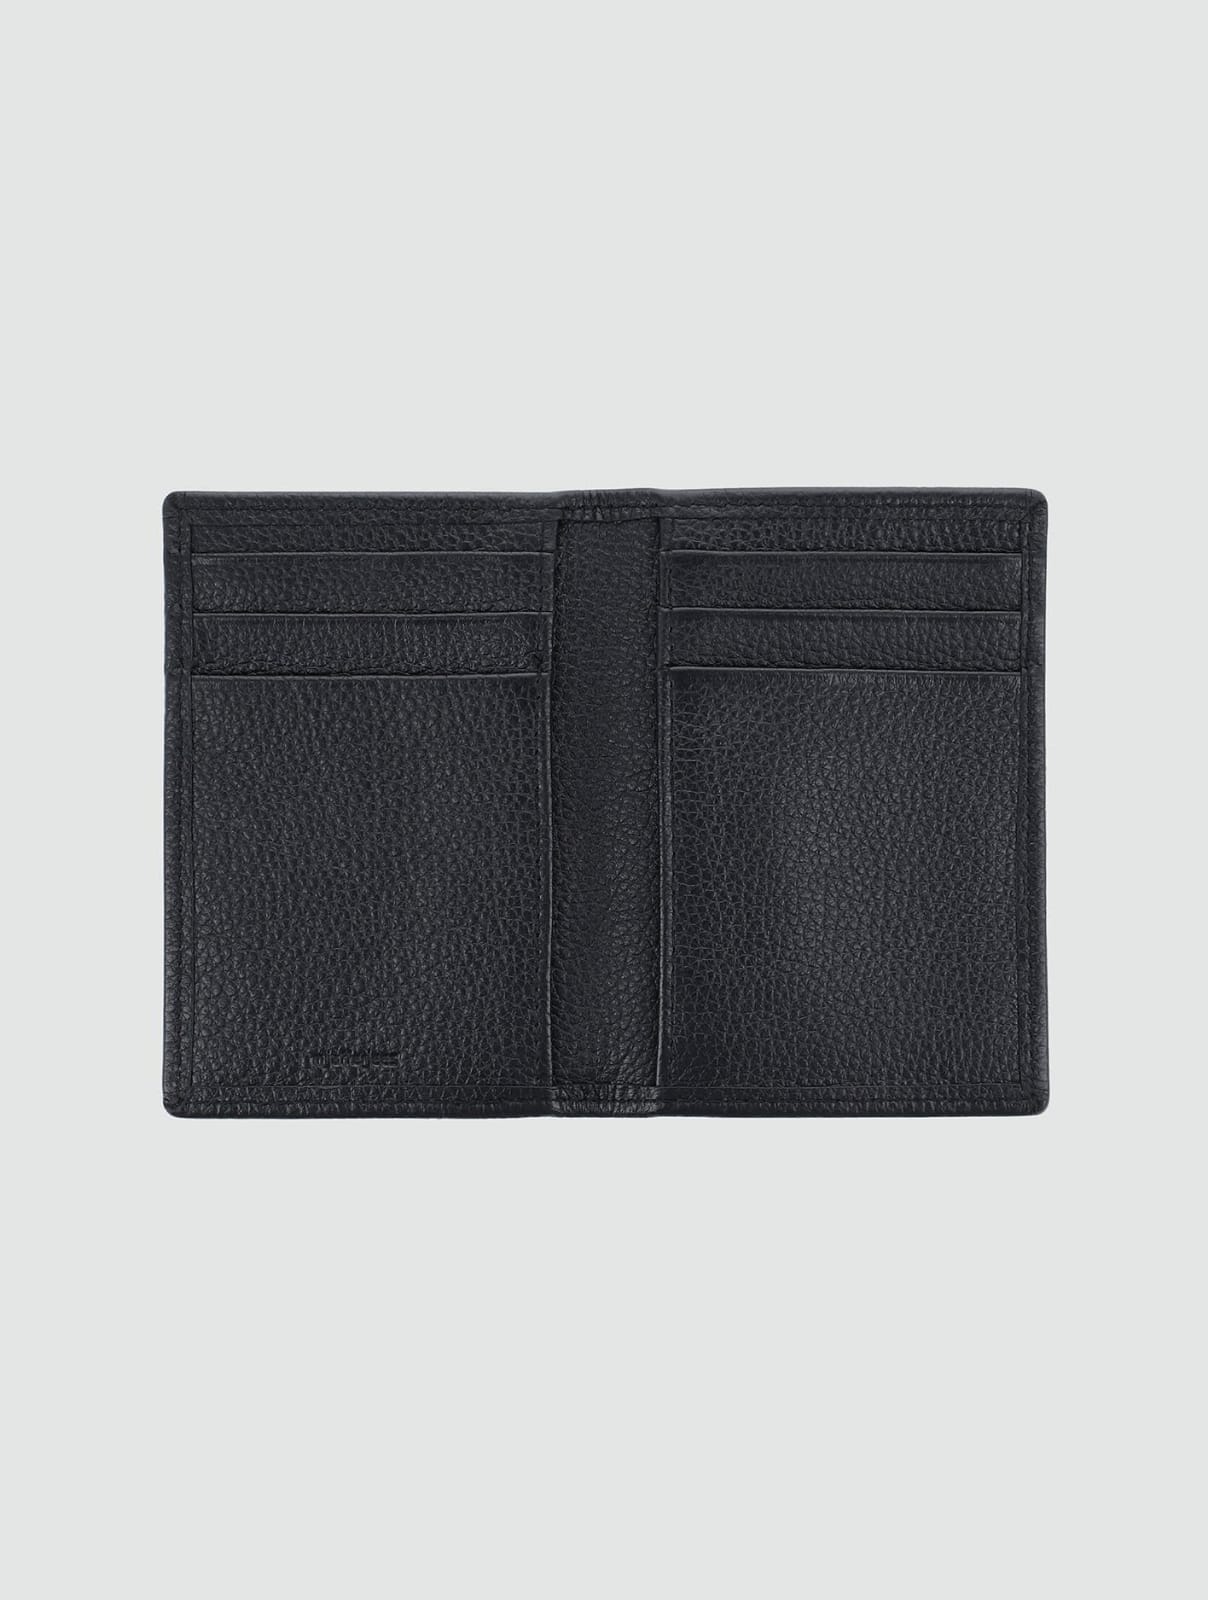 Black Leather Slim Bi-fold Card Holder Wallet